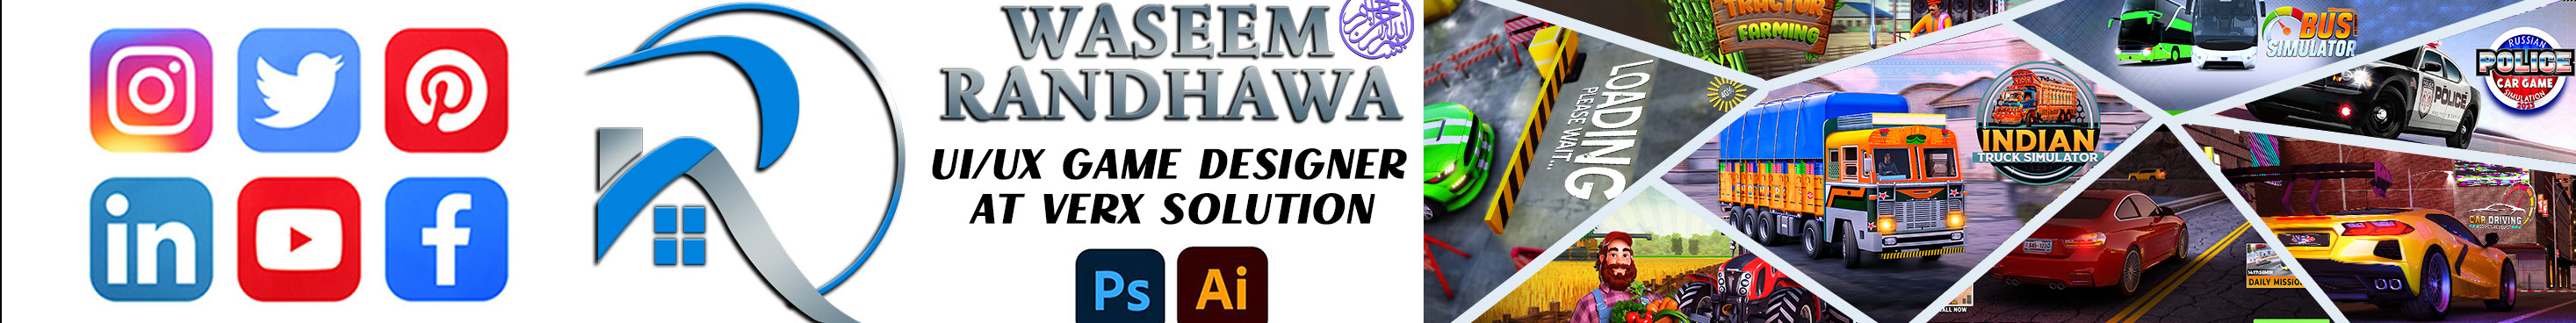 WASEEM RANDHAWA's profile banner